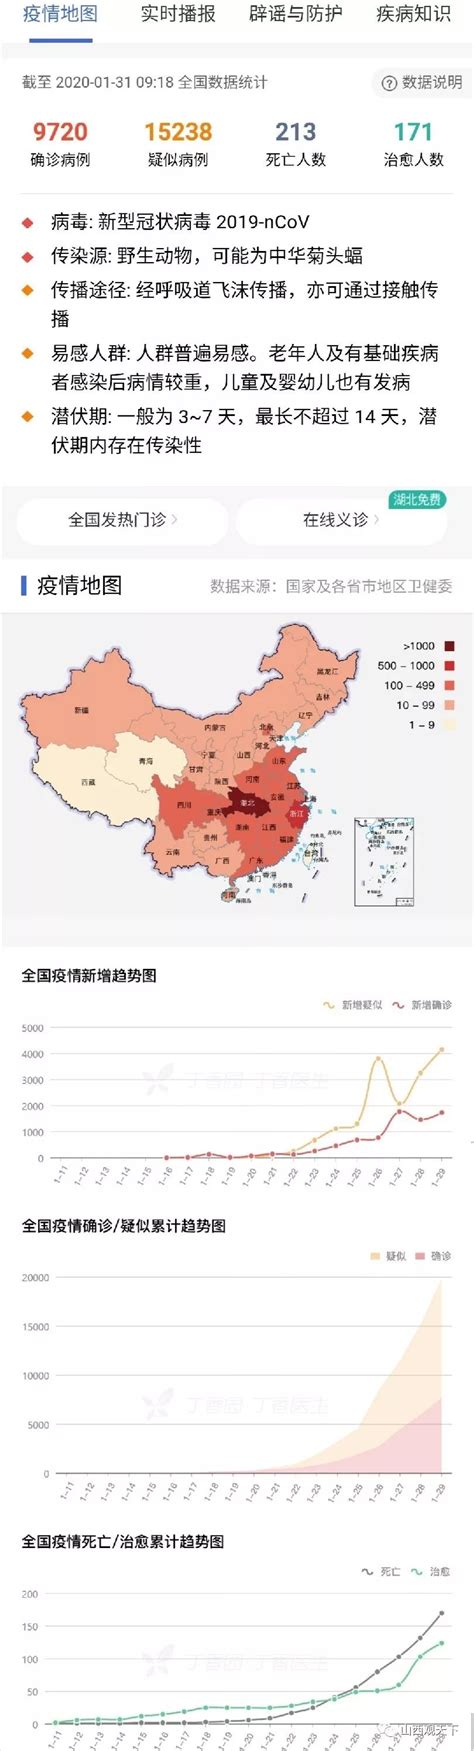 截至2月4日24时全国新型冠状肺炎疫情最新情况- 北京本地宝